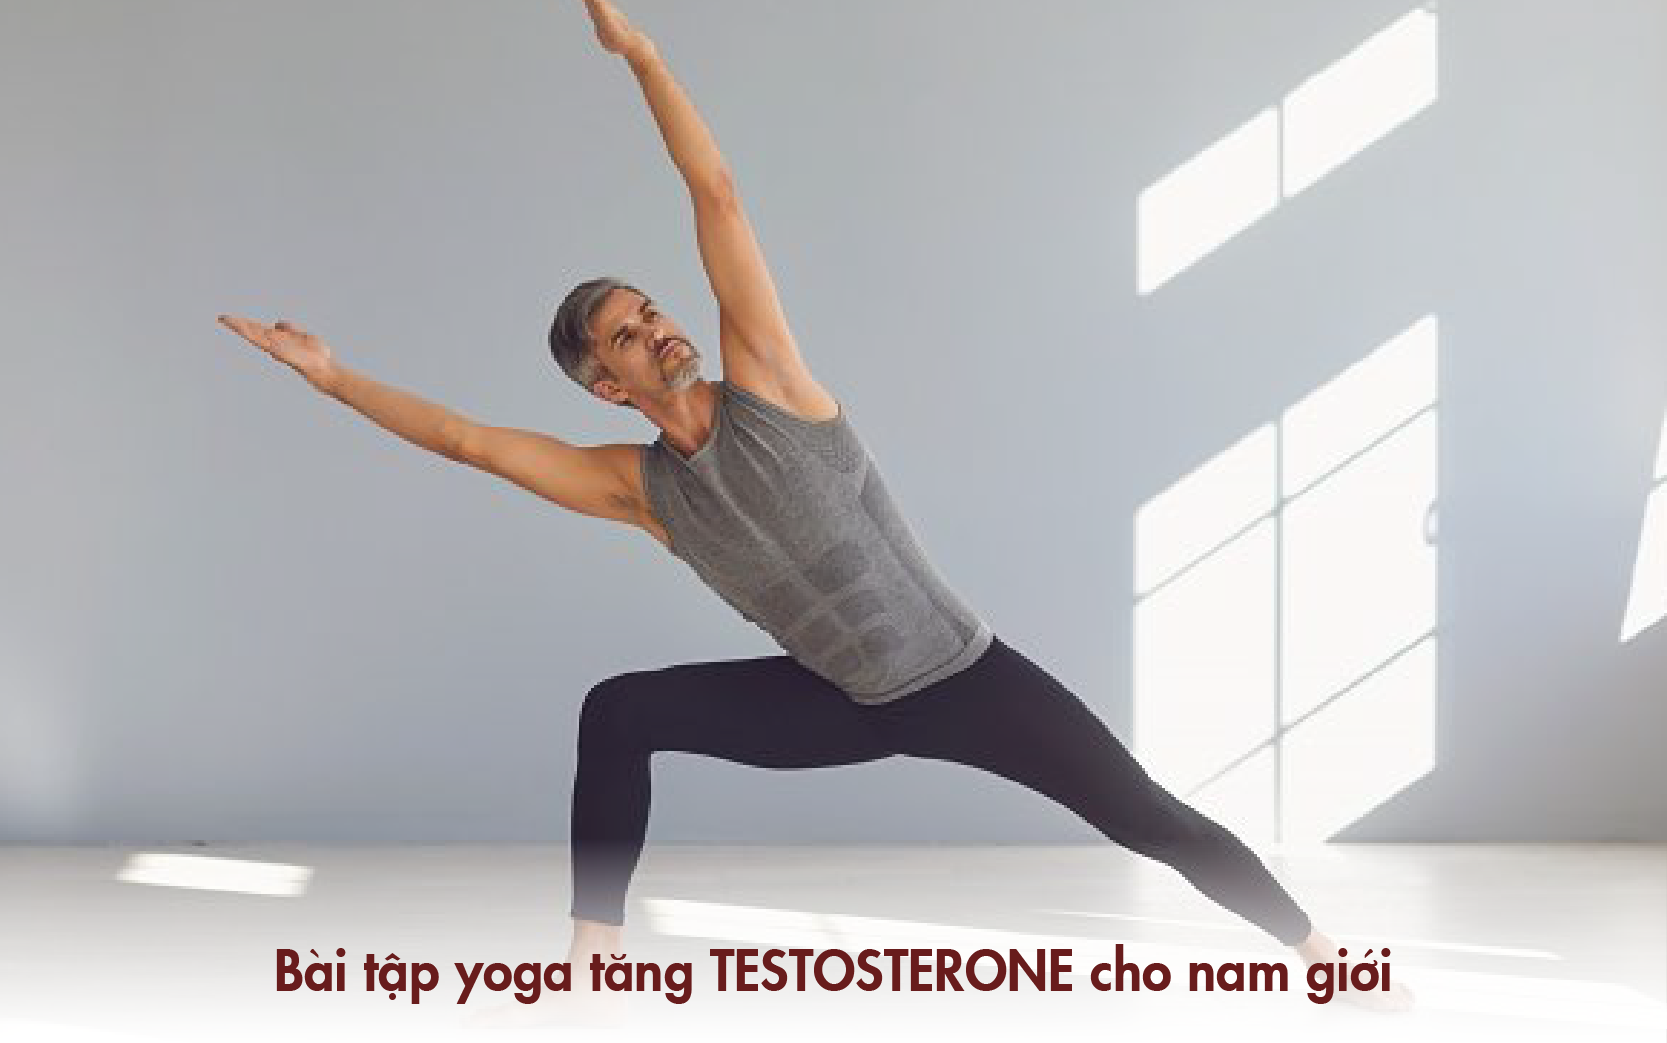 Nhiều bài tập Yoga giúp tăng testosterone hiệu quả